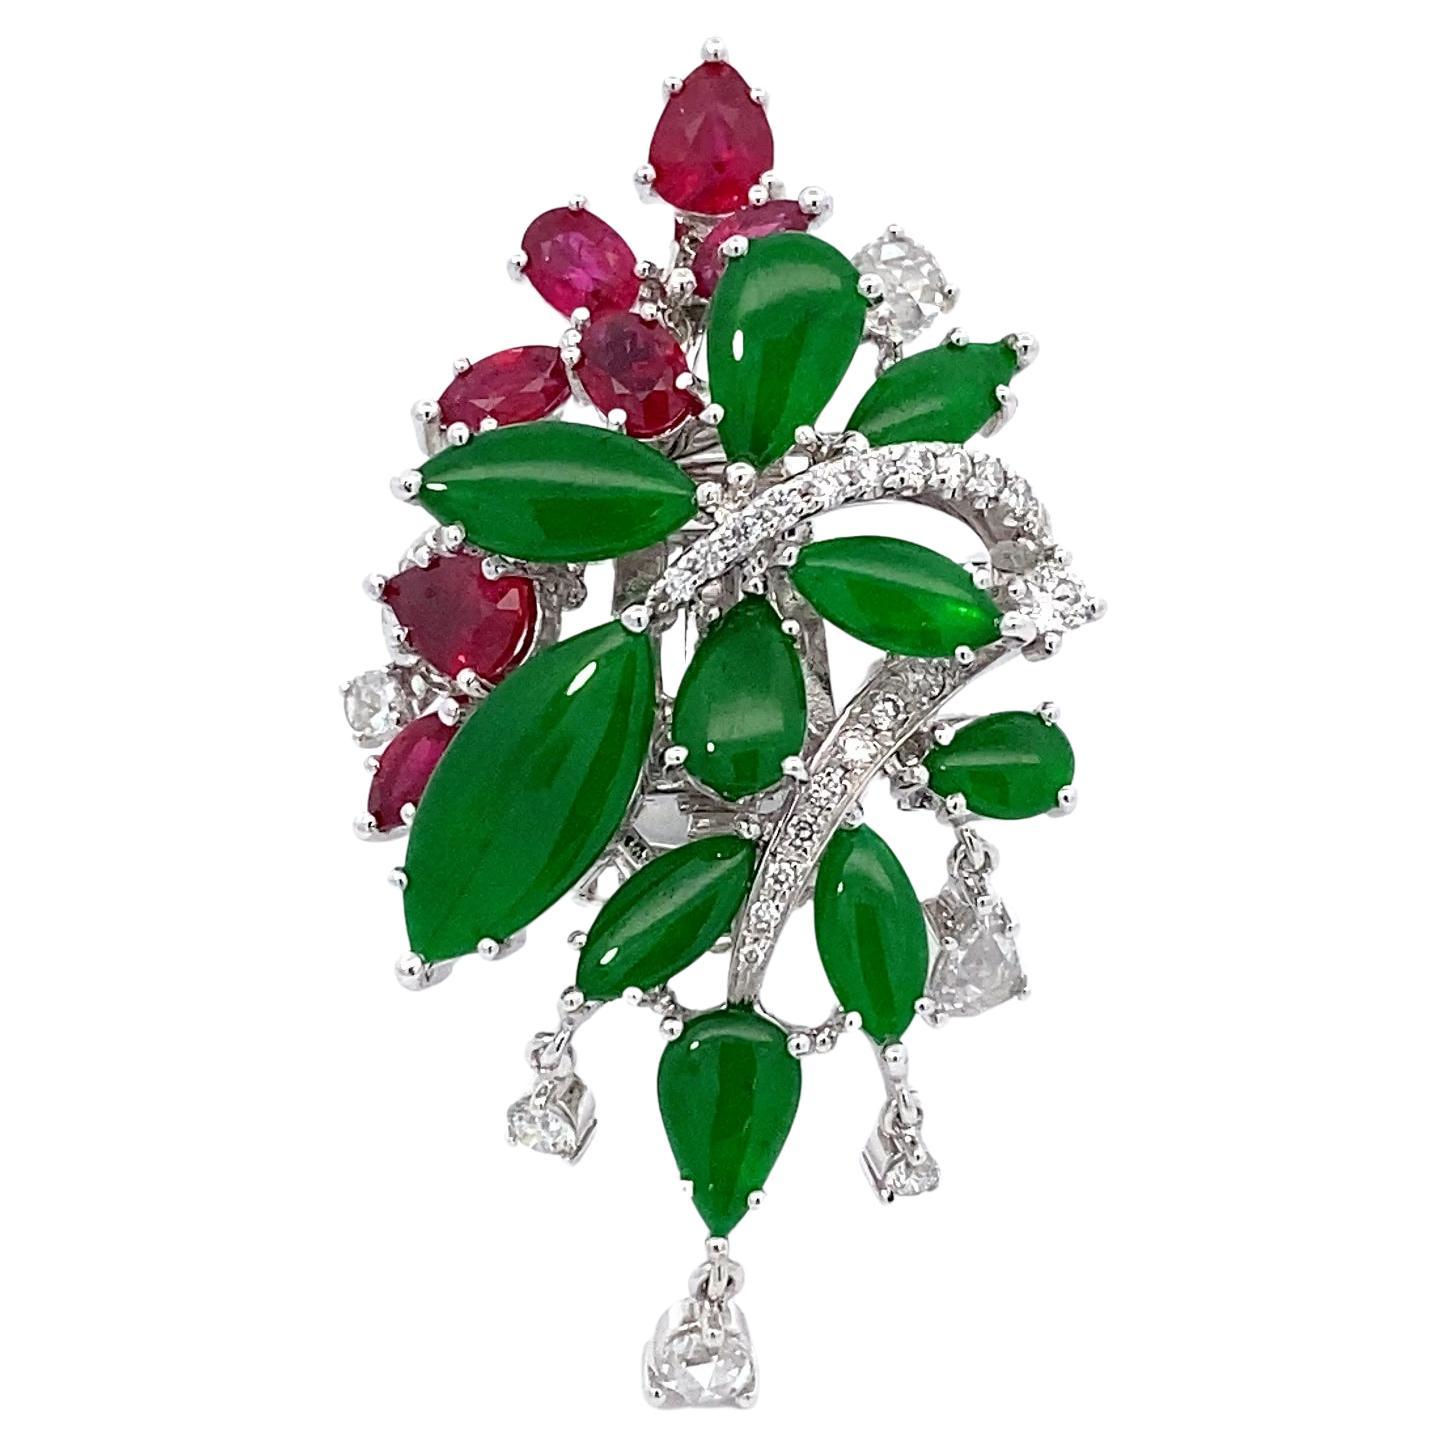 Bague « impériale verte » en or 18 carats, jadéite, rubis et diamants de Dilys